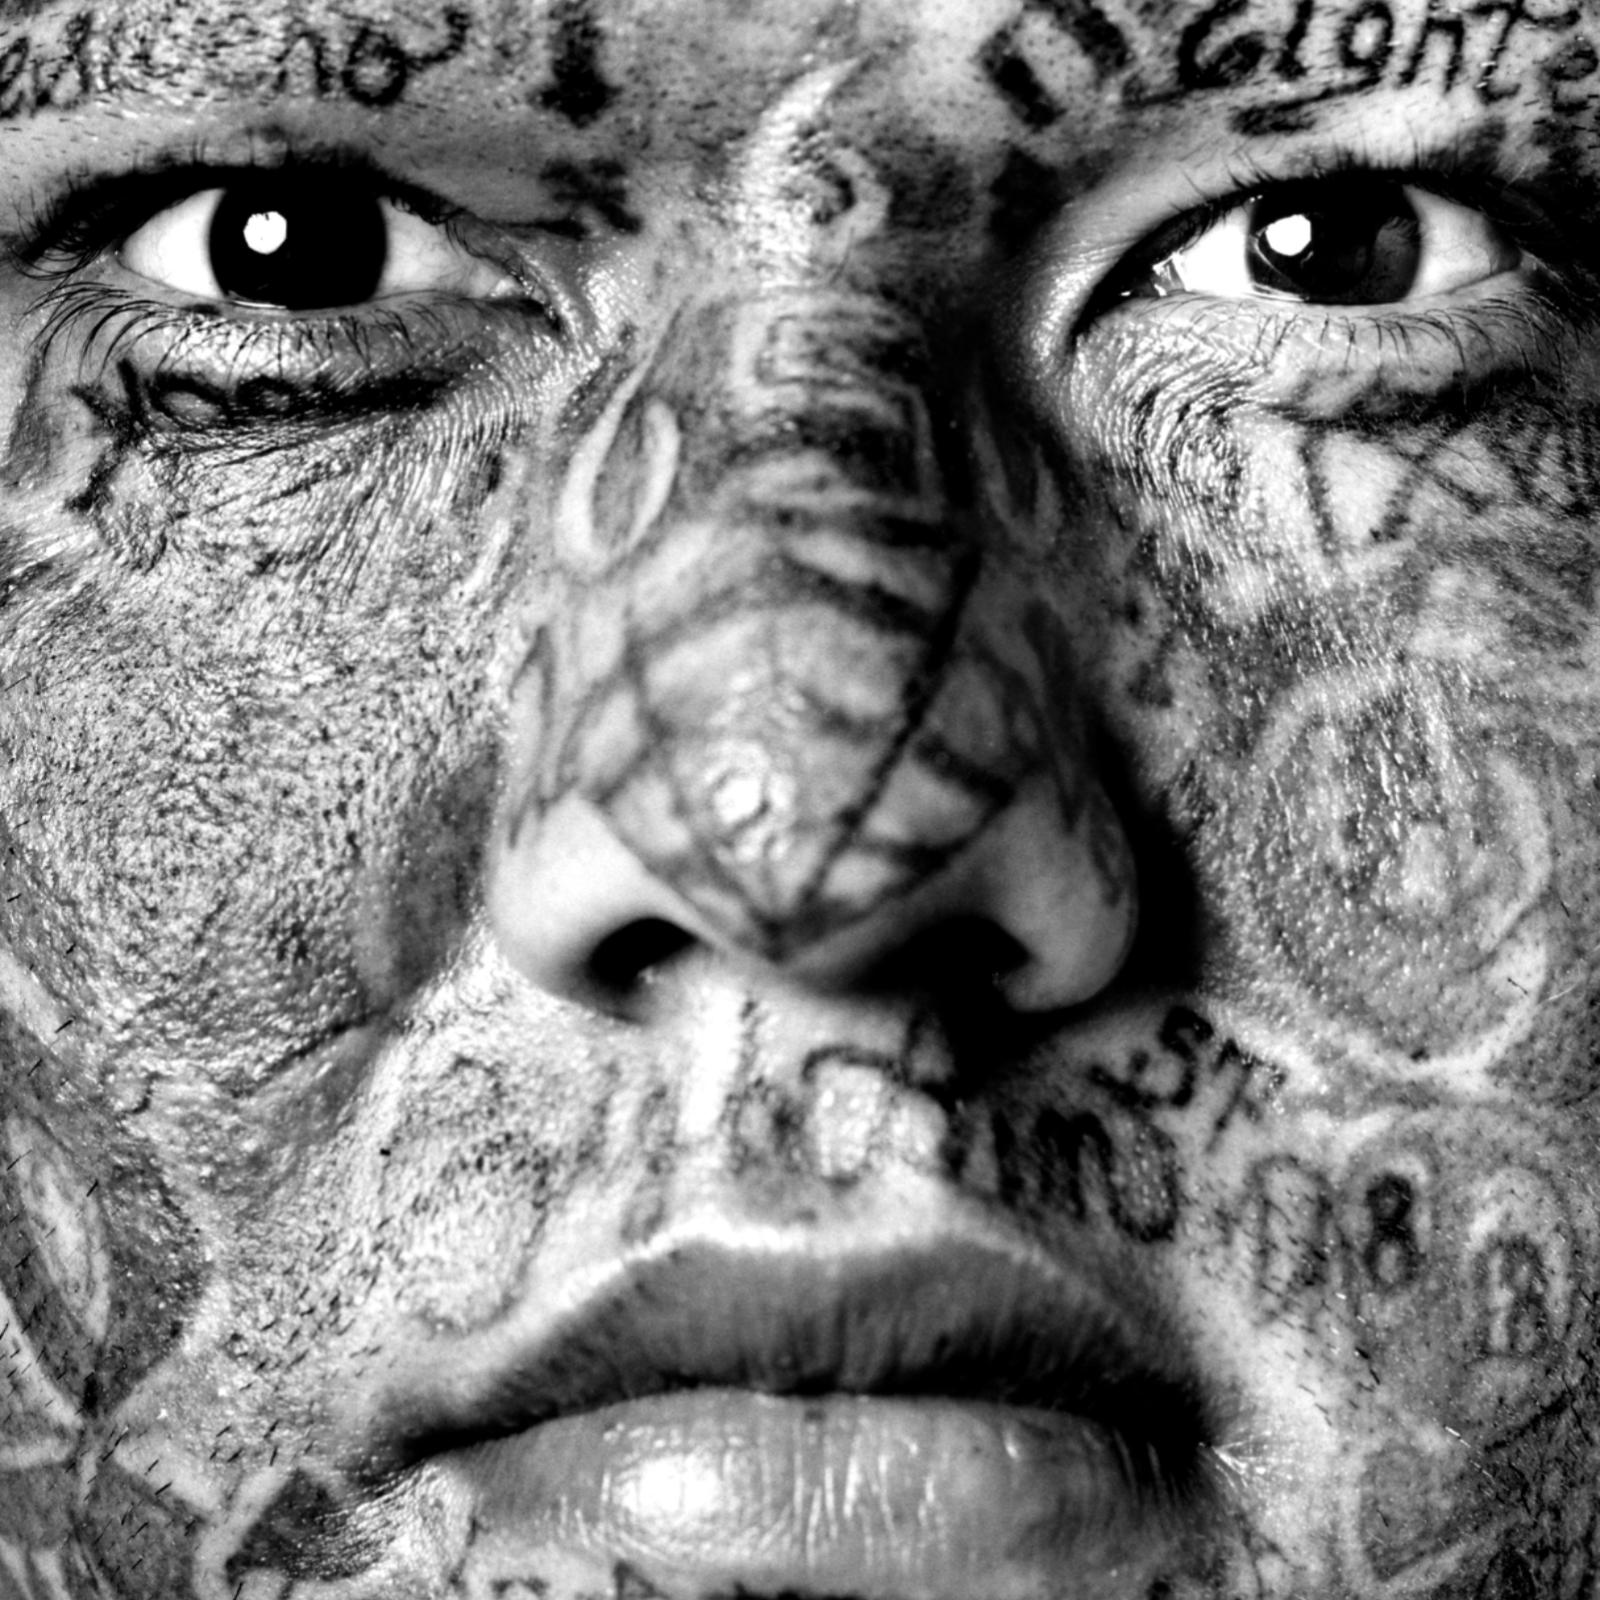 История татуировки длиною более 3 тысяч лет татуировки, татуировка, которые, который, потому, можно, татуировку, очень, более, татуировками, имени, время, традиция, чтобы, экспедиции, этого, изображения, наносилась, стали, мумии